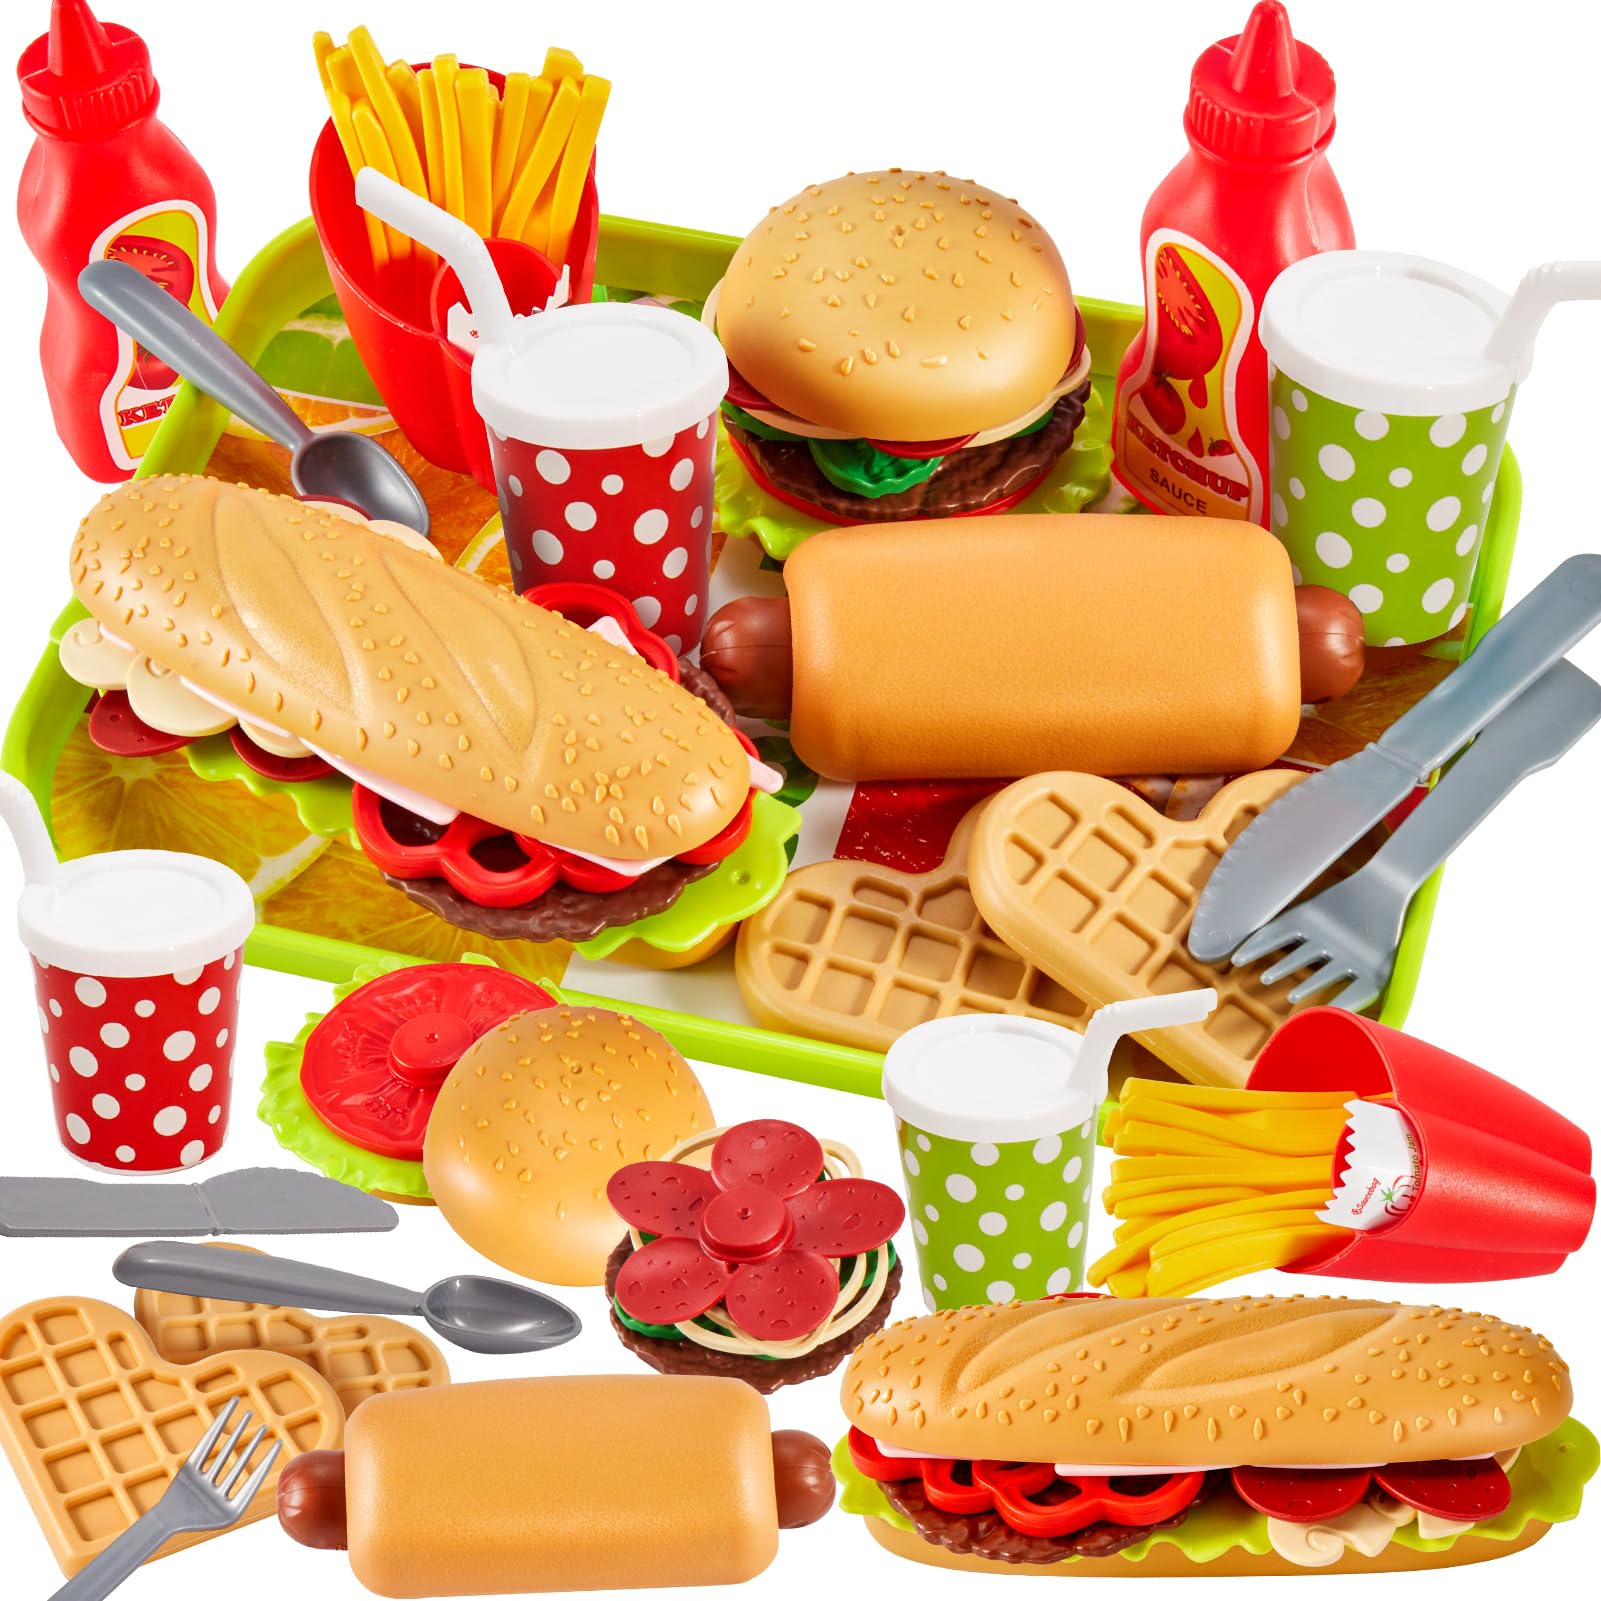 prix de gros BUYGER Dinette Enfant Hamburger Jouet Aliment Cuisine avec Plateau Frites Hot-Dogs, Jeu d´imitation 3 4 5 Ans PAwkJq2UG Haute Quaity